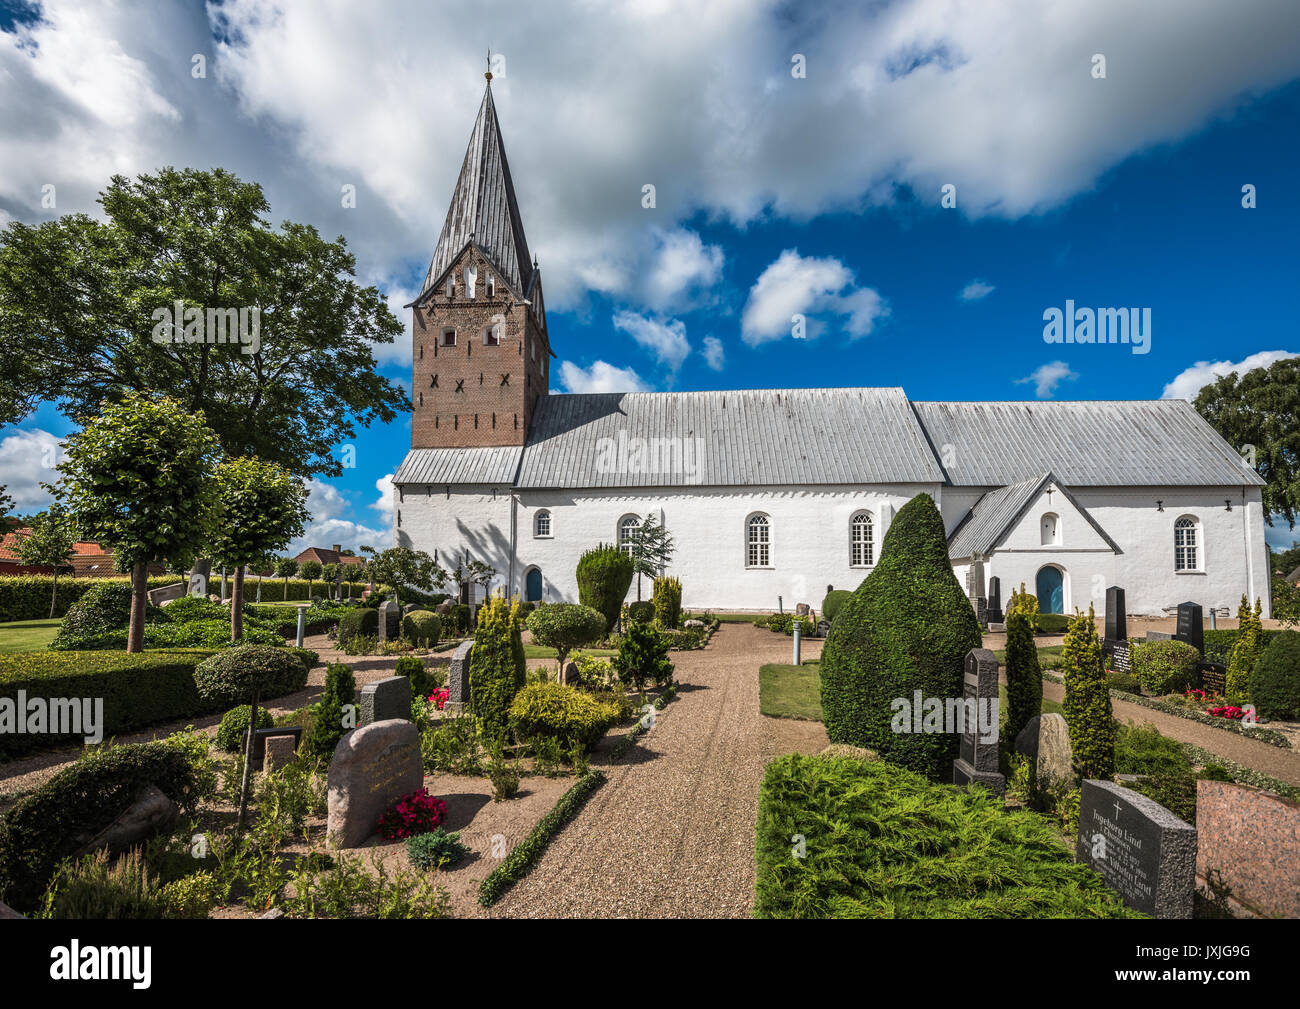 Mogeltonder, little Danish village in the southwest of Jutland peninsula, Denmark Stock Photo